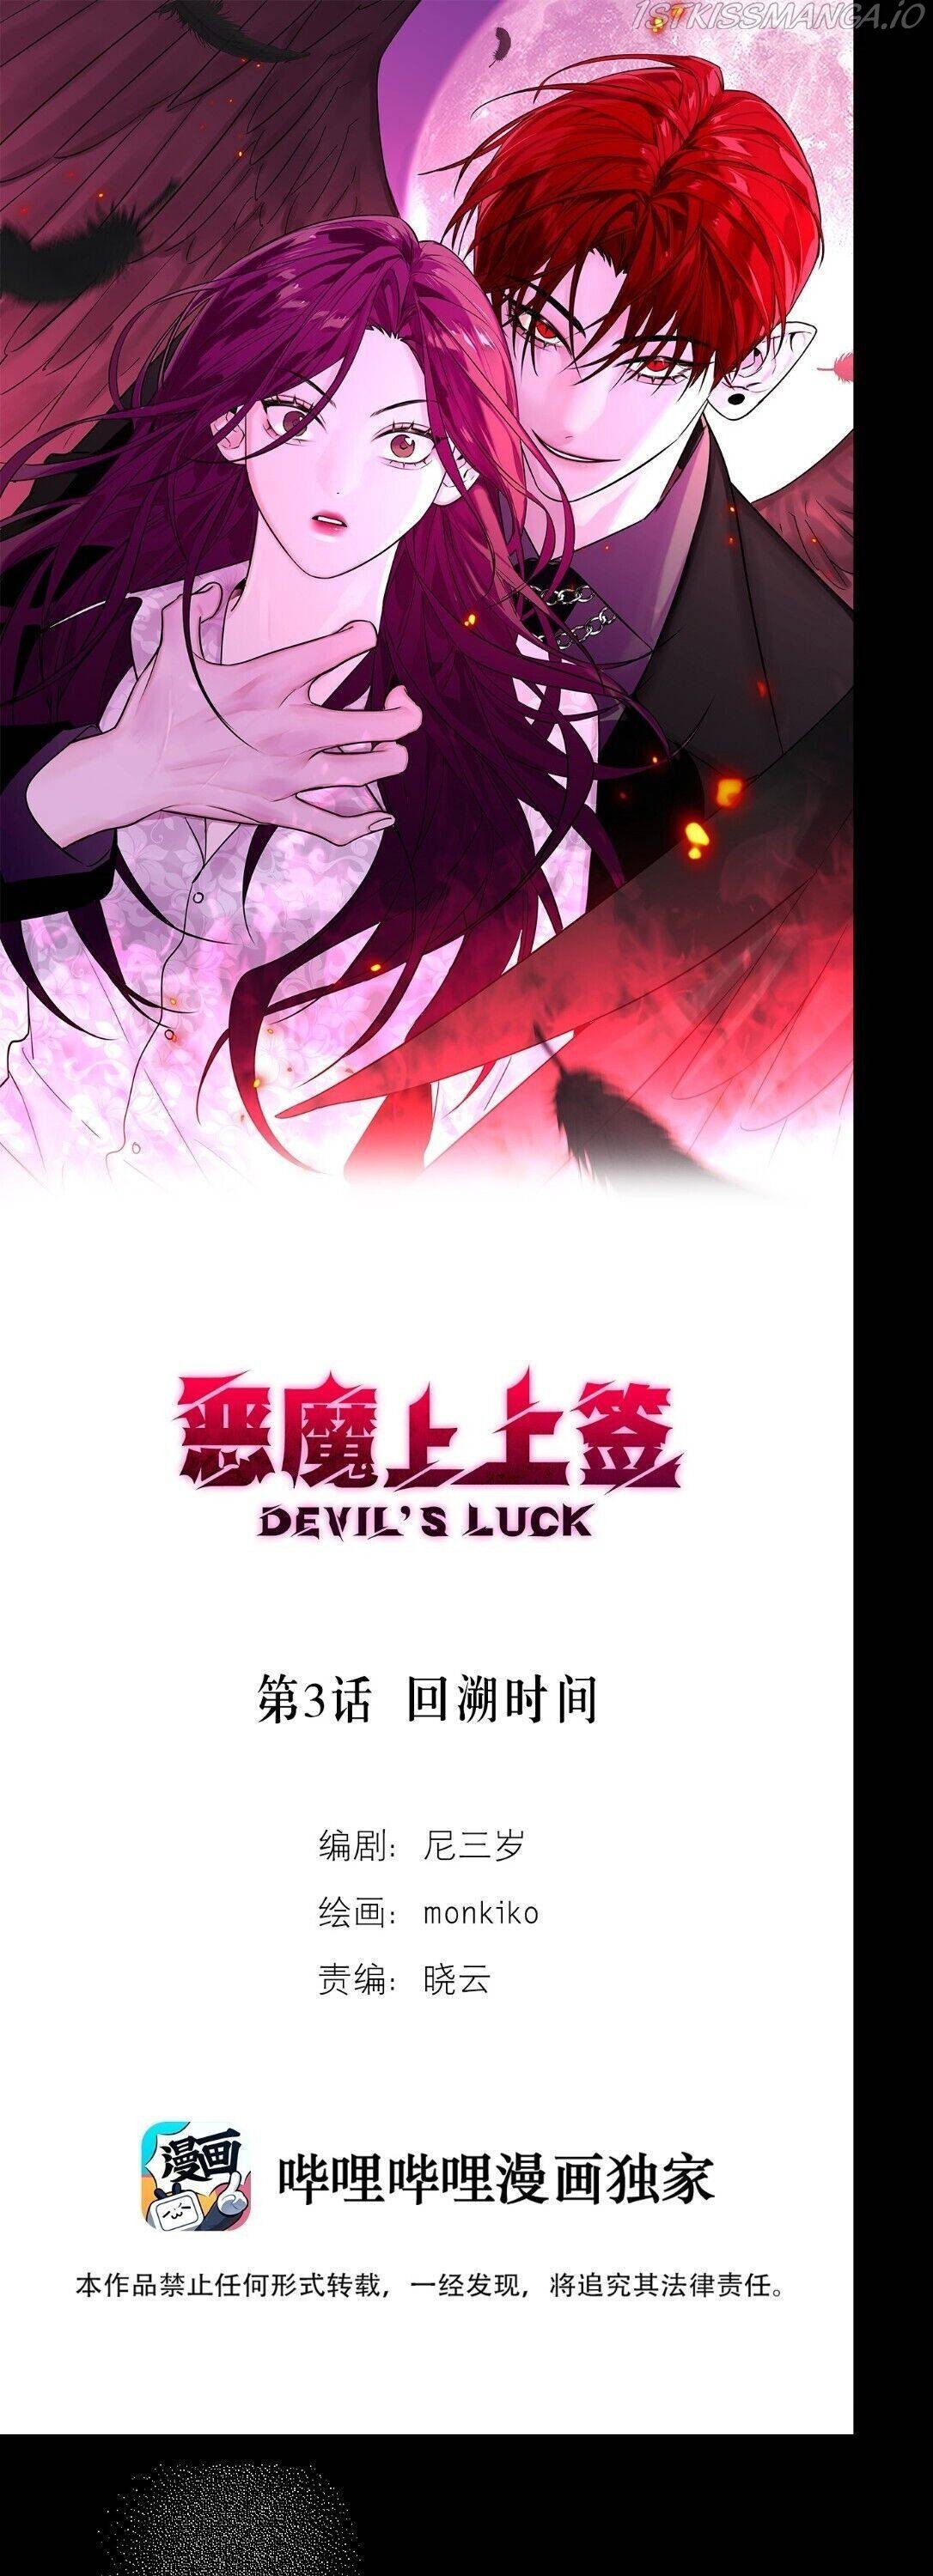 Devil’s Luck chapter 3